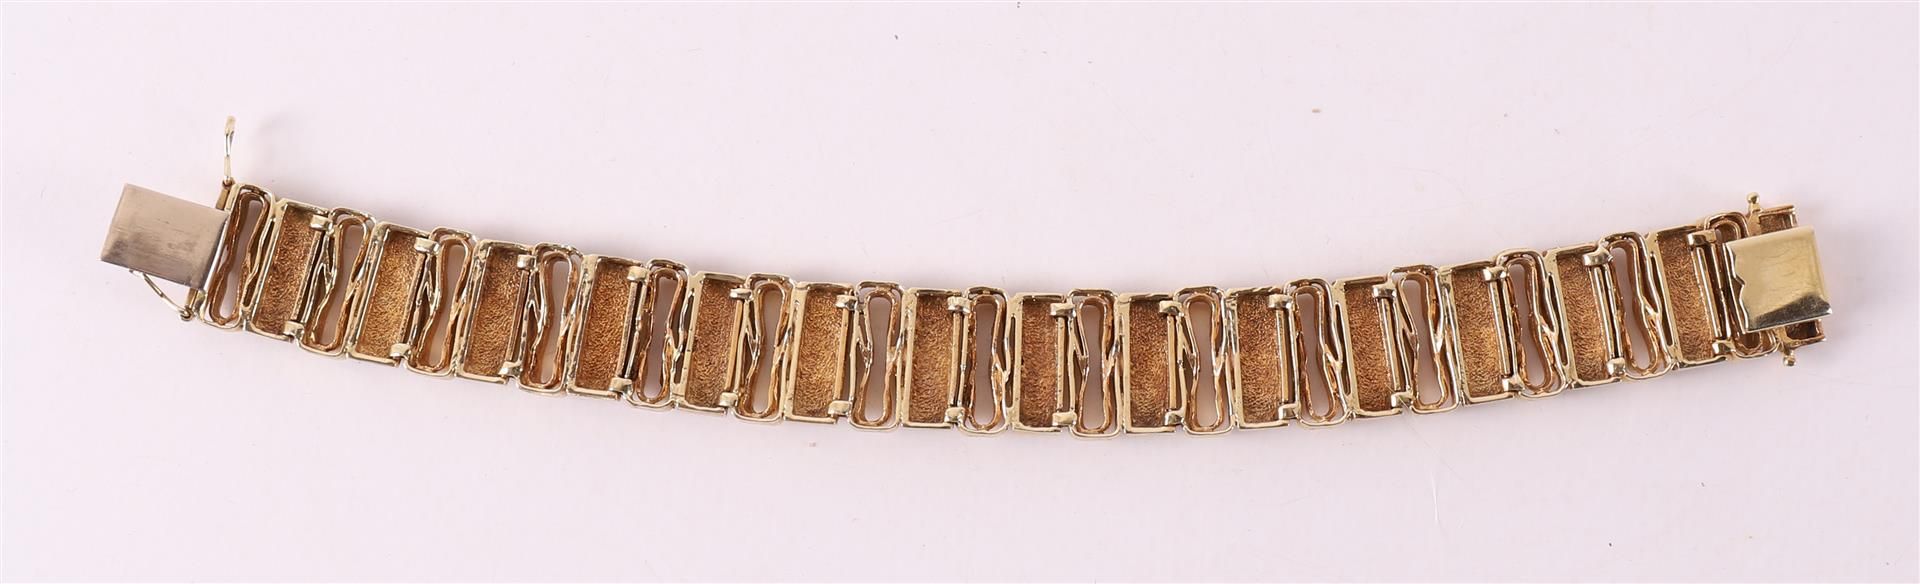 A 14 kt 585/1000 yellow gold vintage design link bracelet - Image 2 of 2